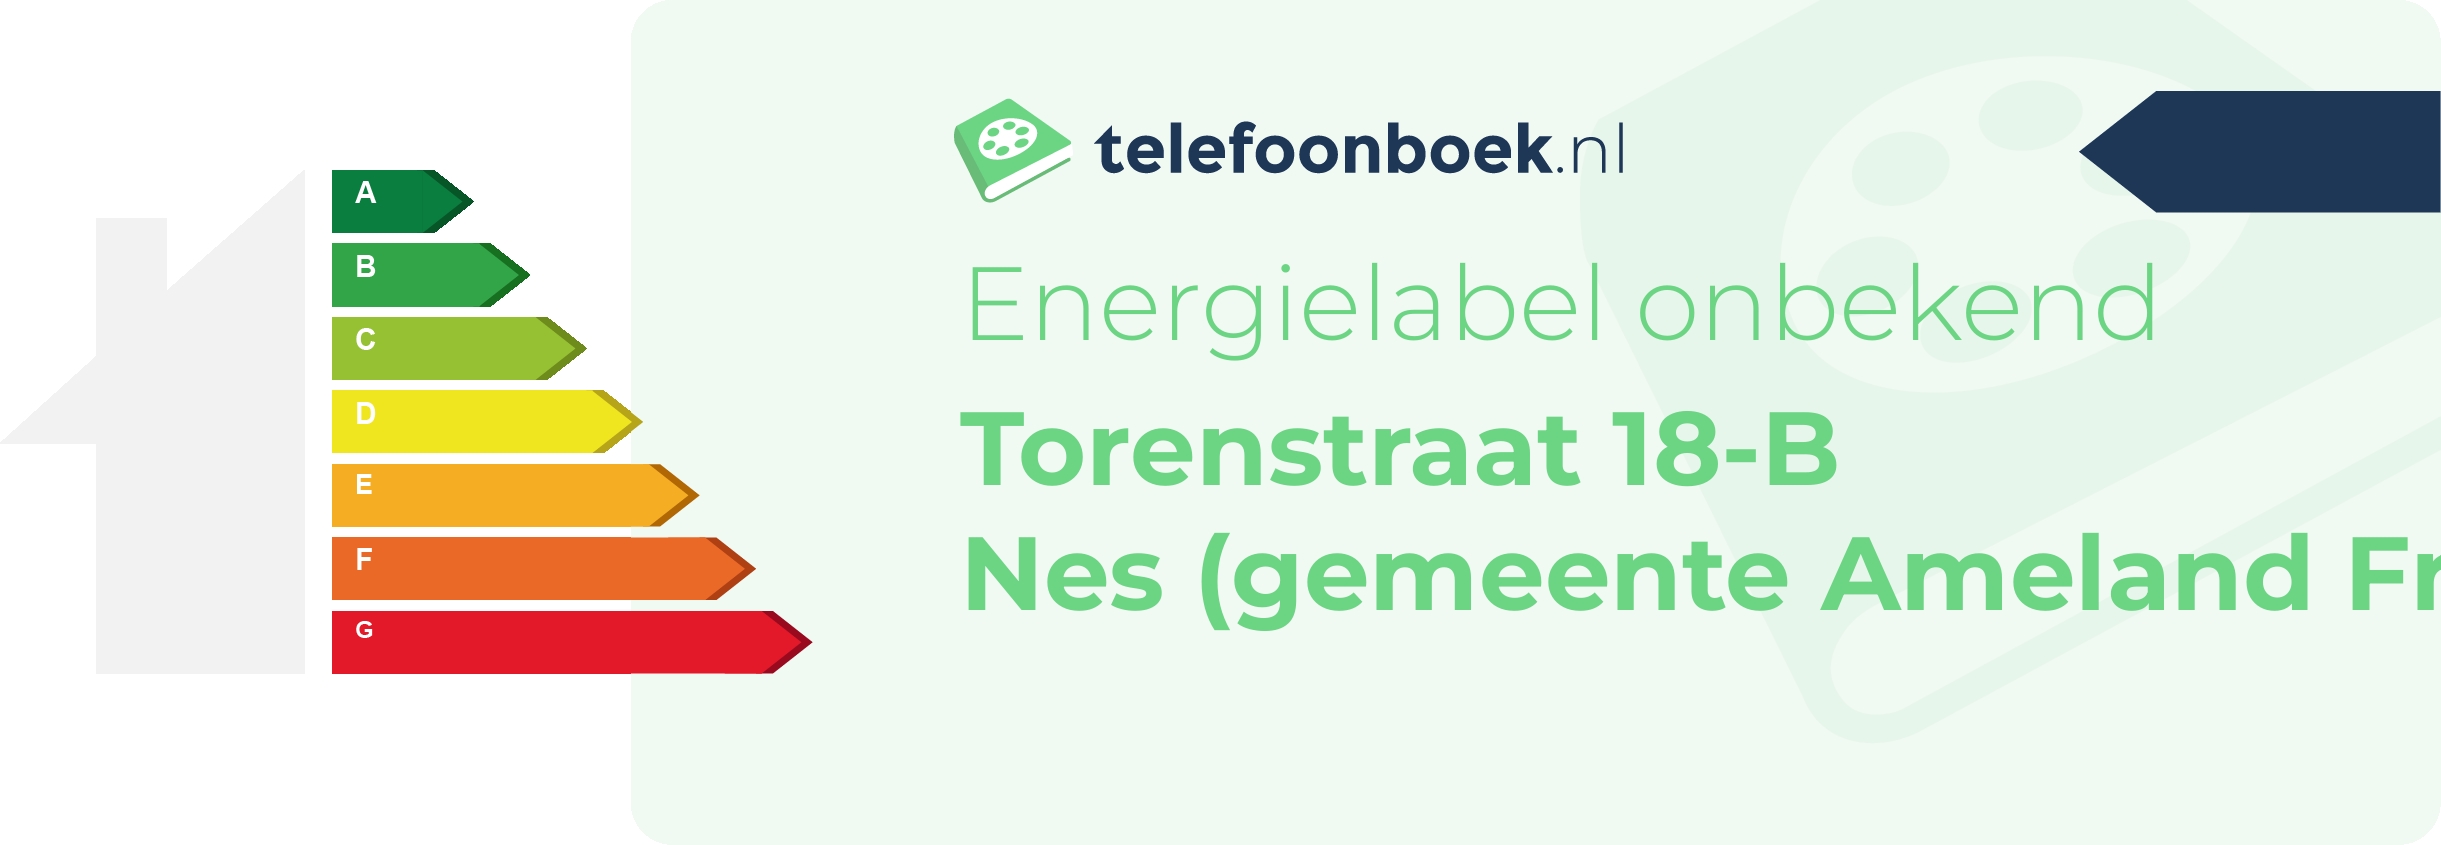 Energielabel Torenstraat 18-B Nes (gemeente Ameland Friesland)